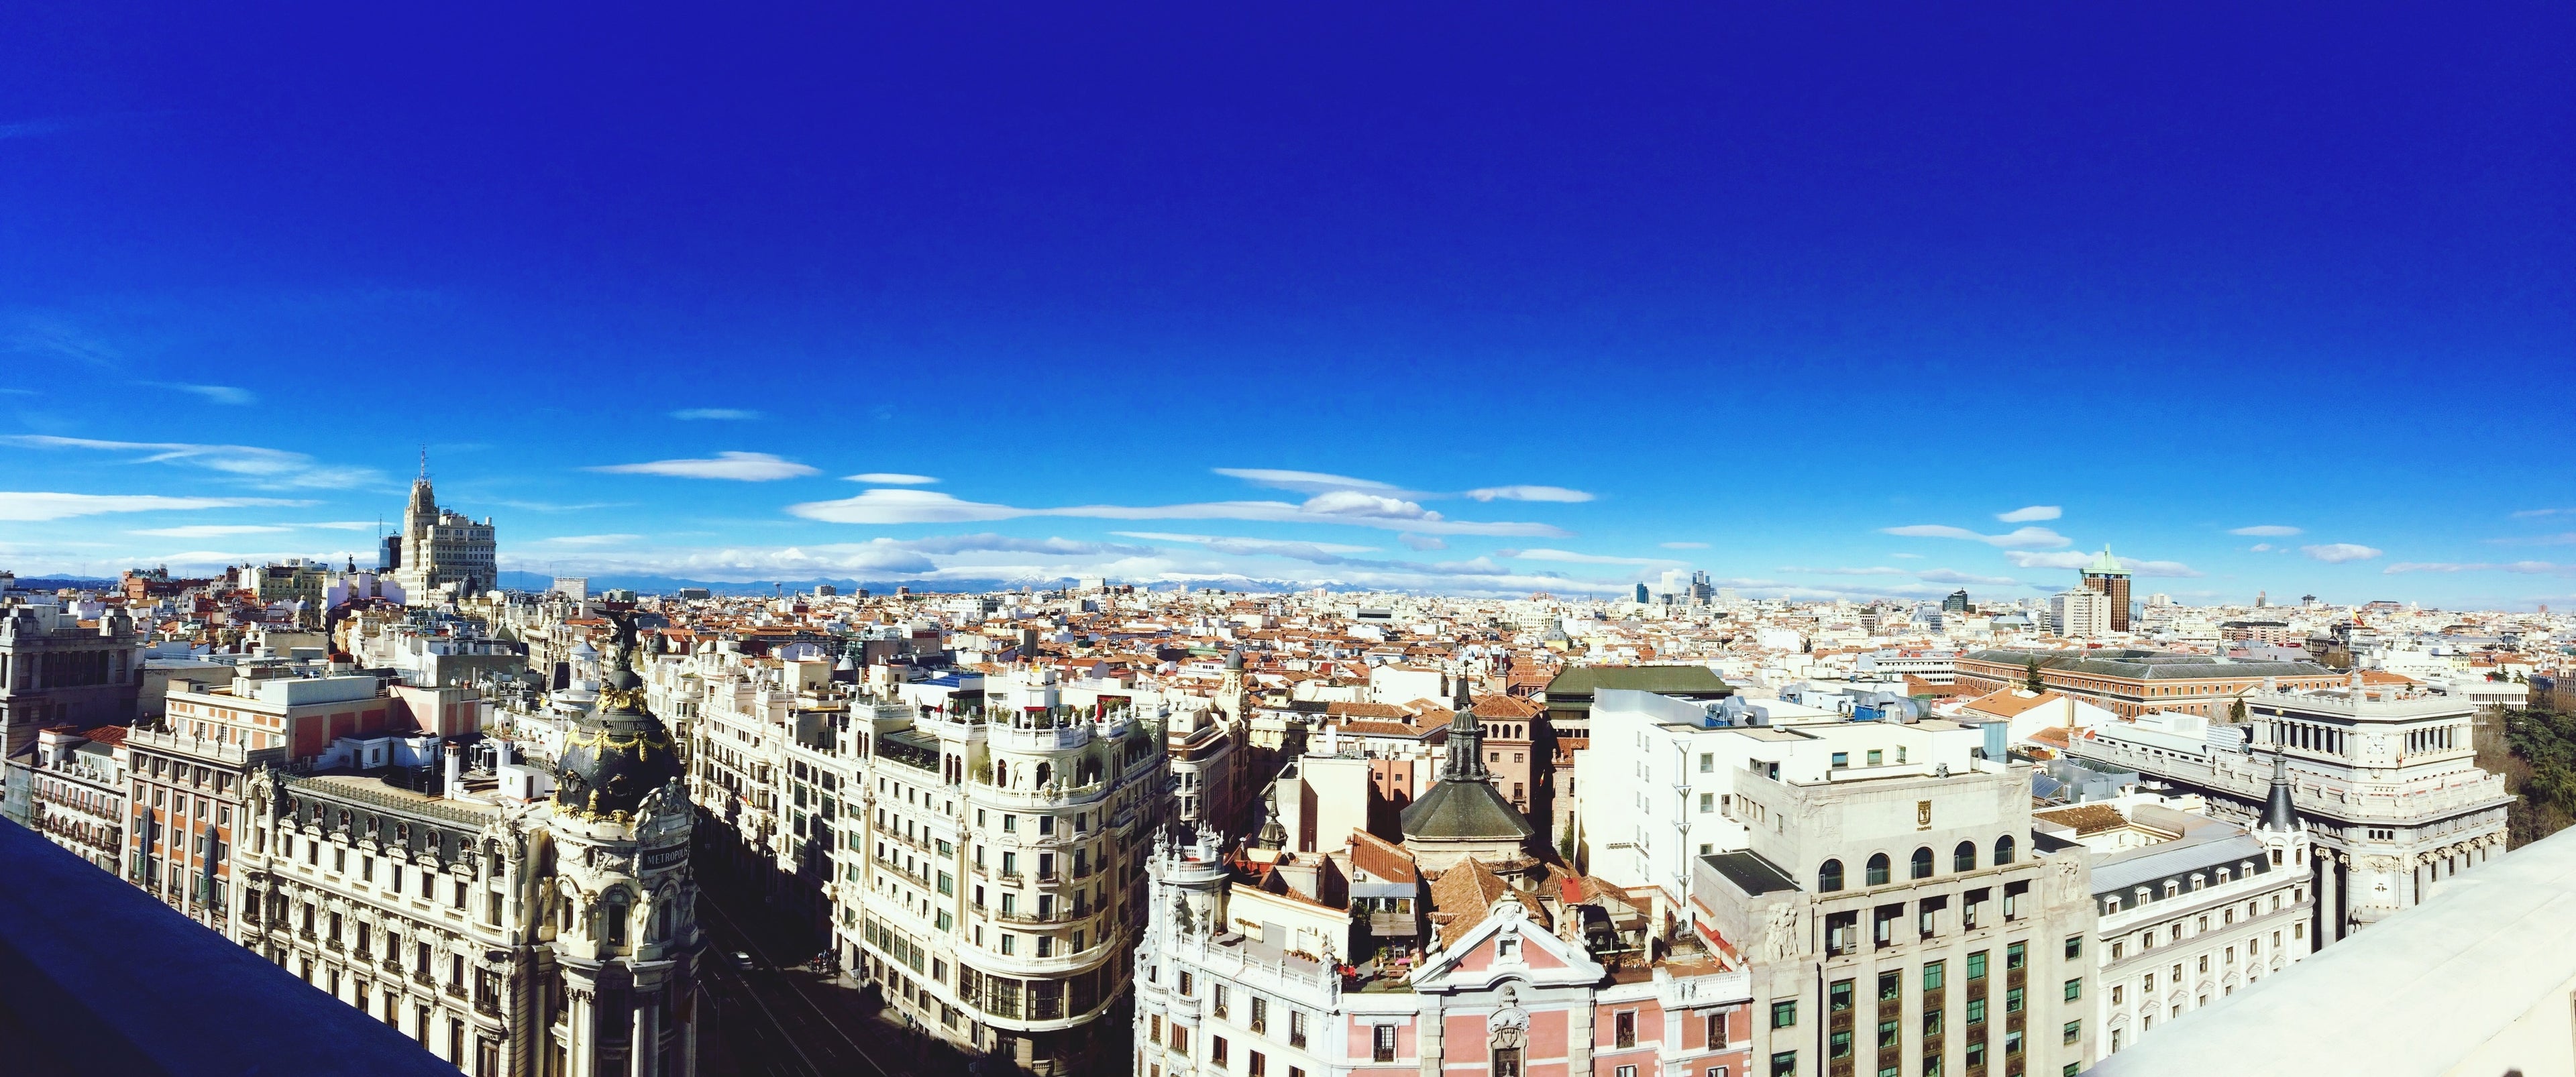 Panoramic View Of City